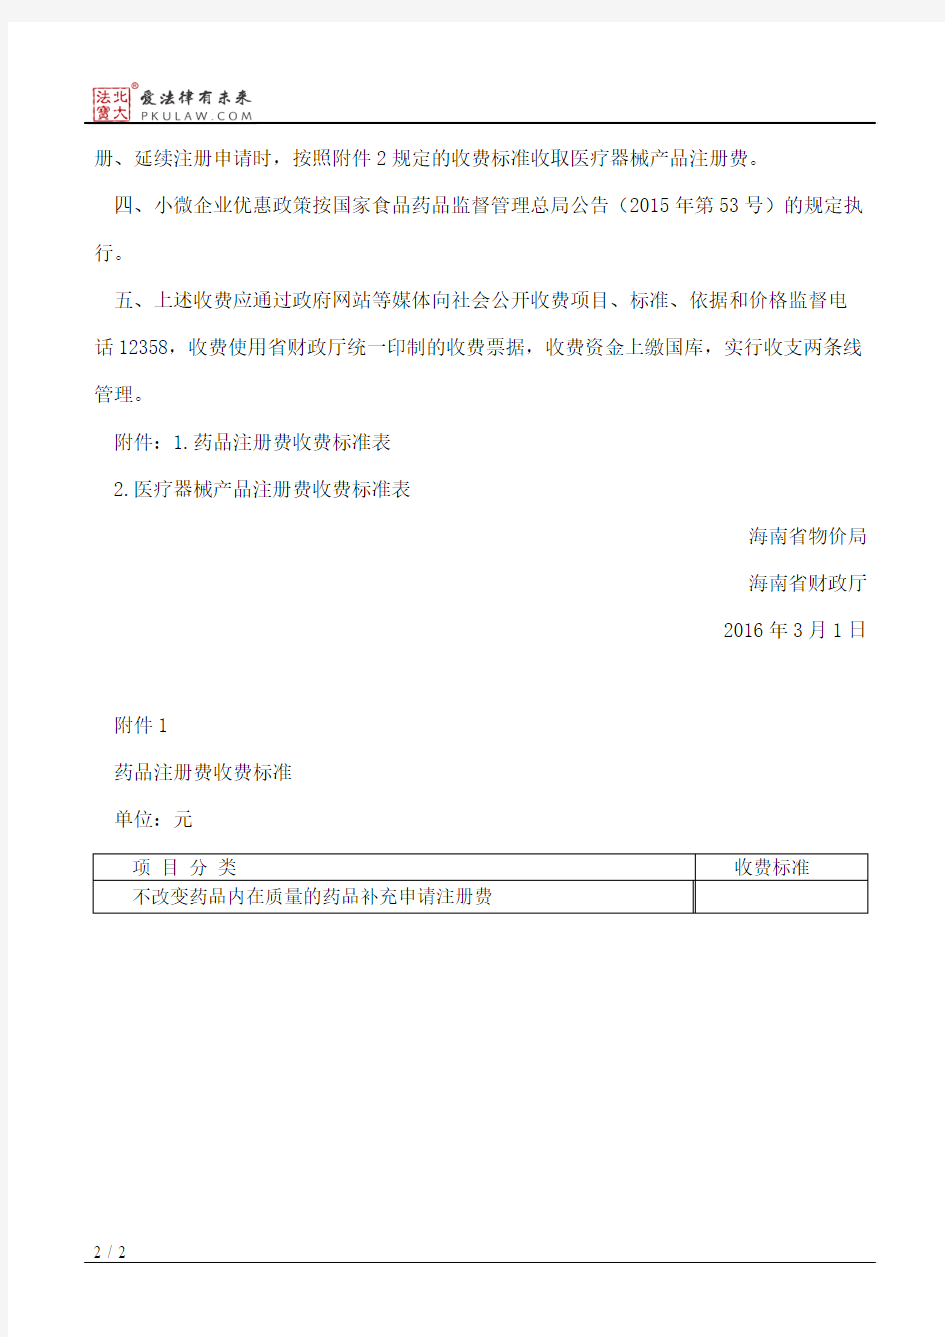 海南省物价局、海南省财政厅关于核定药品注册与医疗器械产品注册